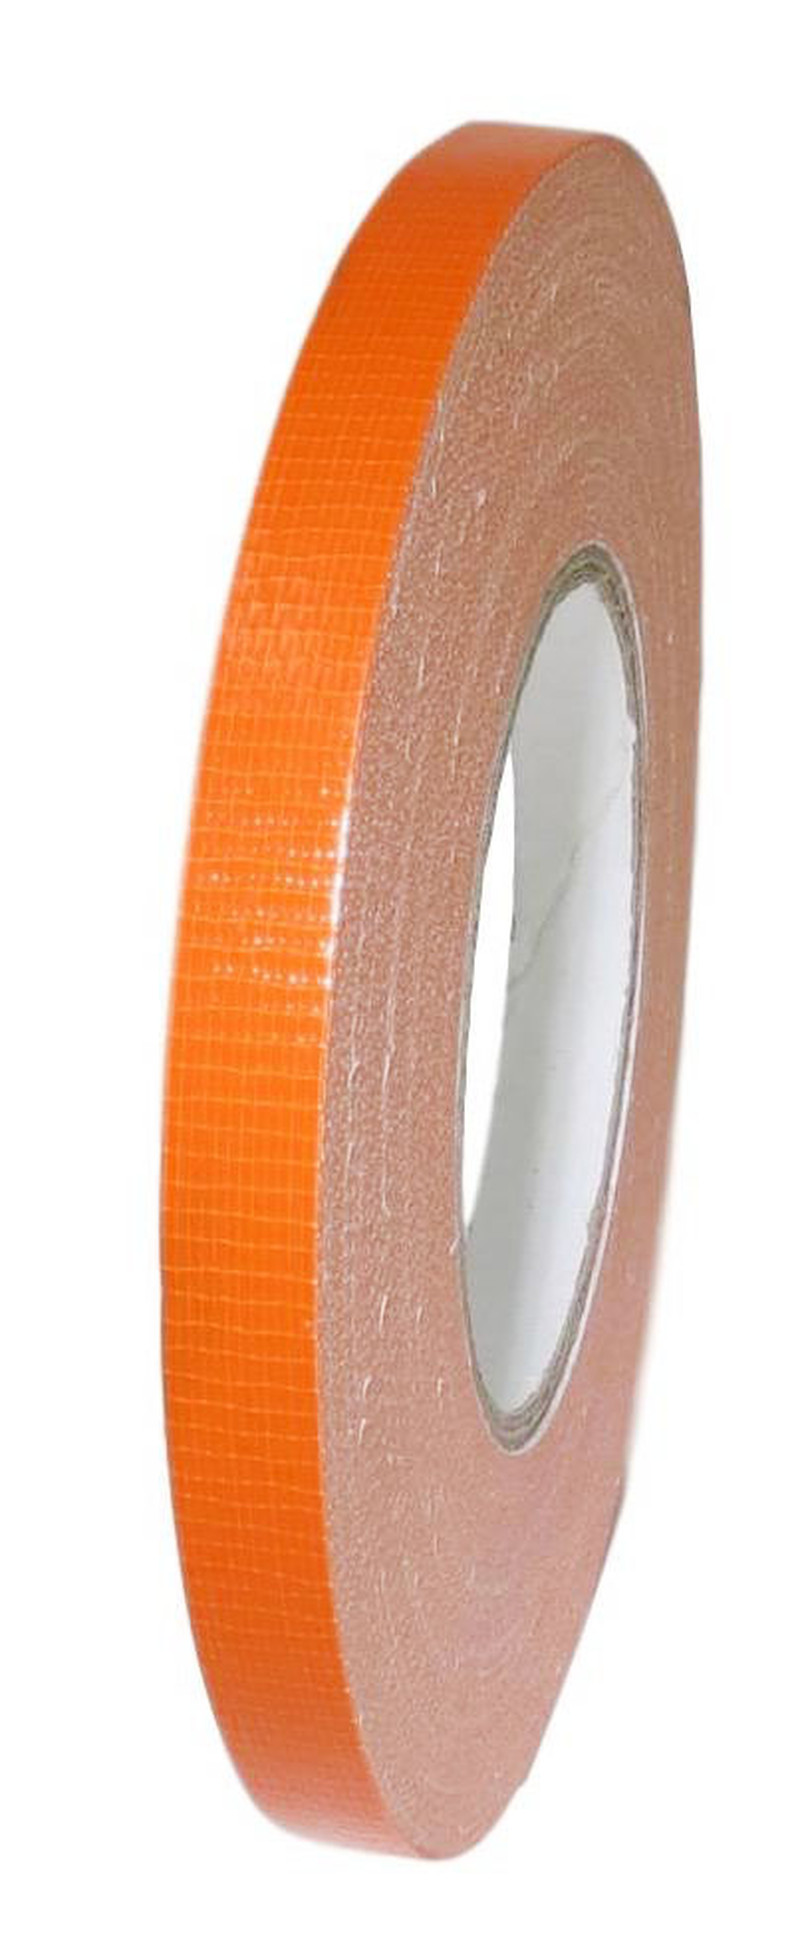 T.R.U. Industrial Duct Tape. Waterproof- UV Resistant Dark Brown